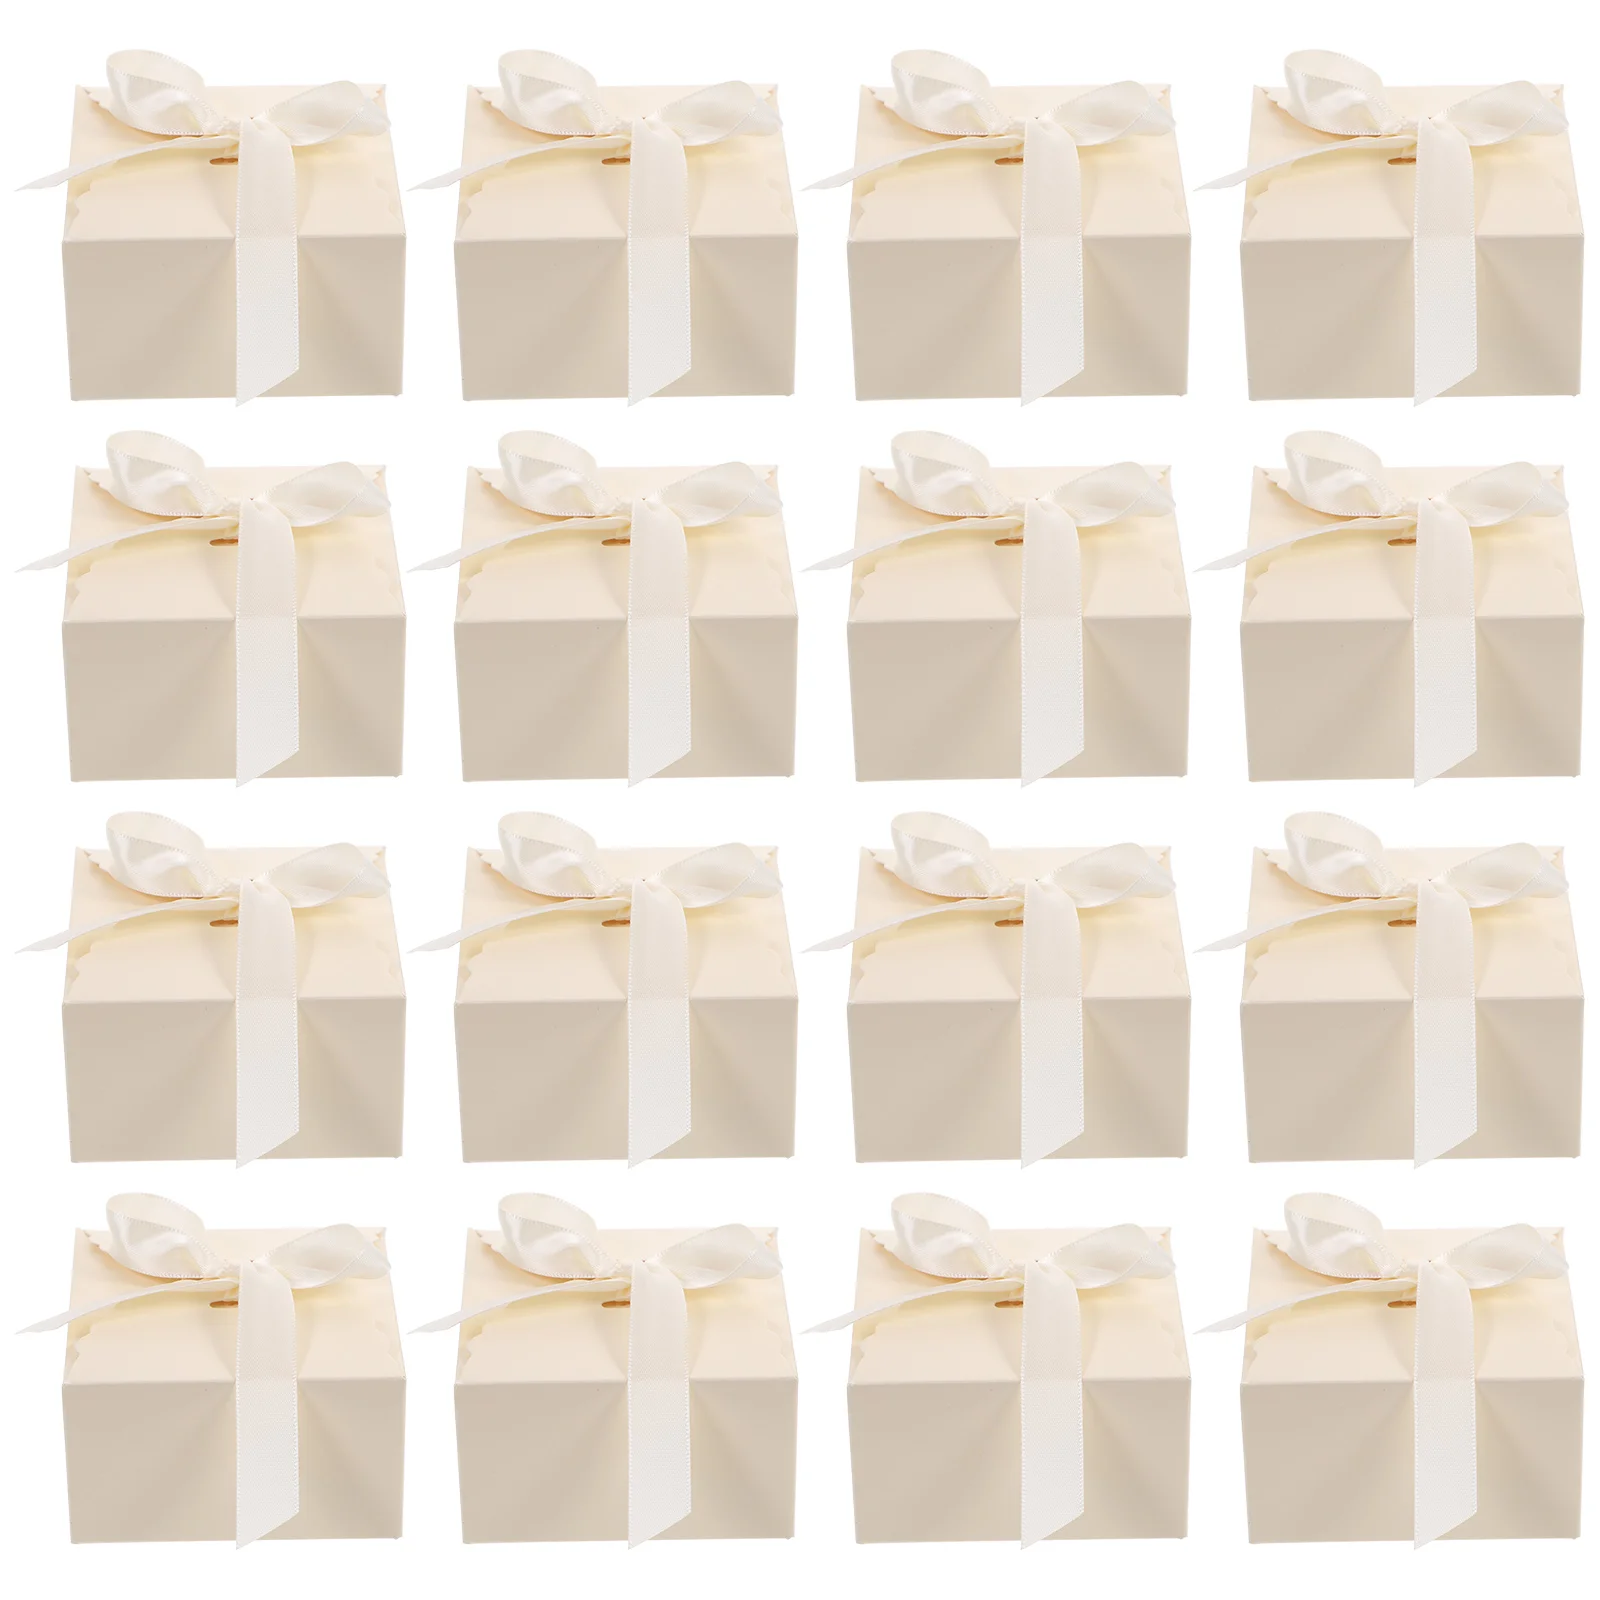 

20 шт. квадратная Подарочная коробка, Подарочная коробка, пакеты для упаковки ювелирных изделий и конфет, упаковочная коробка, подарочные коробки для свадебных торжеств, бумажные коробки для джема и шоколада для невесты